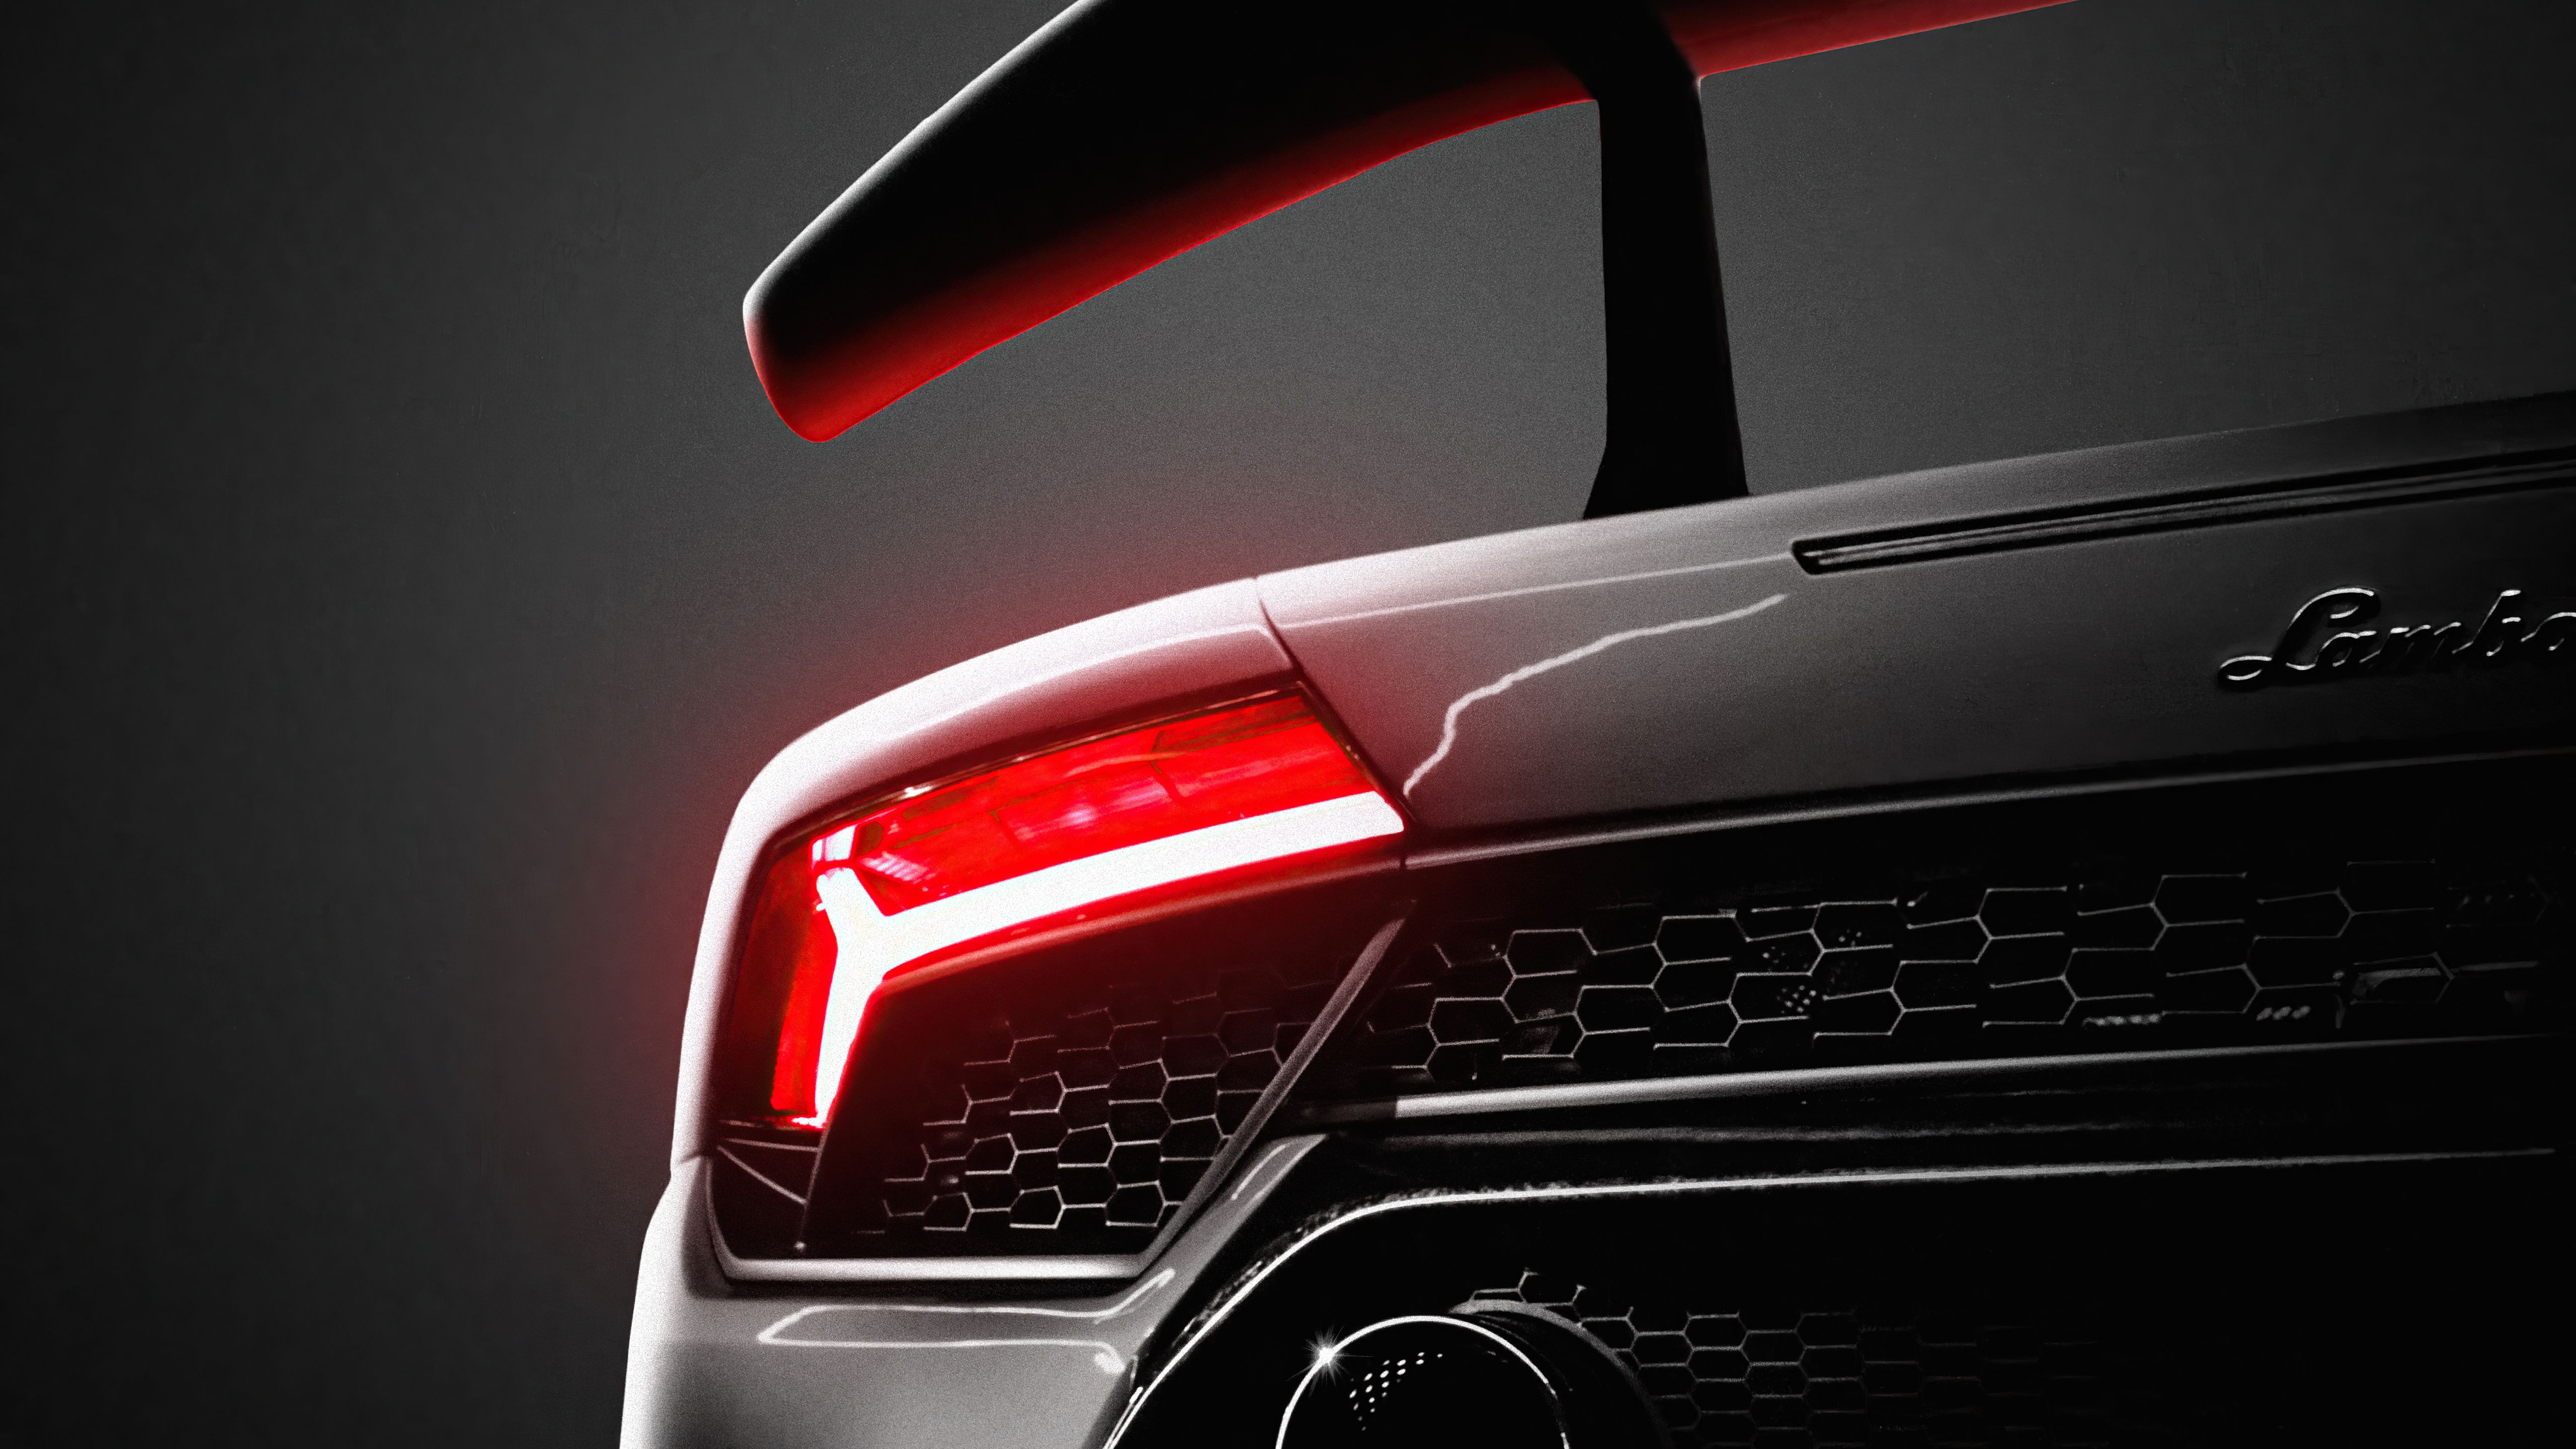 Audi Hintergrundbild 5120x2880. Kostenlose Hintergrundbilder Audi R Car, Sportwagen, Lamborghini, Luxusauto, Bilder Für Ihren Desktop Und Fotos